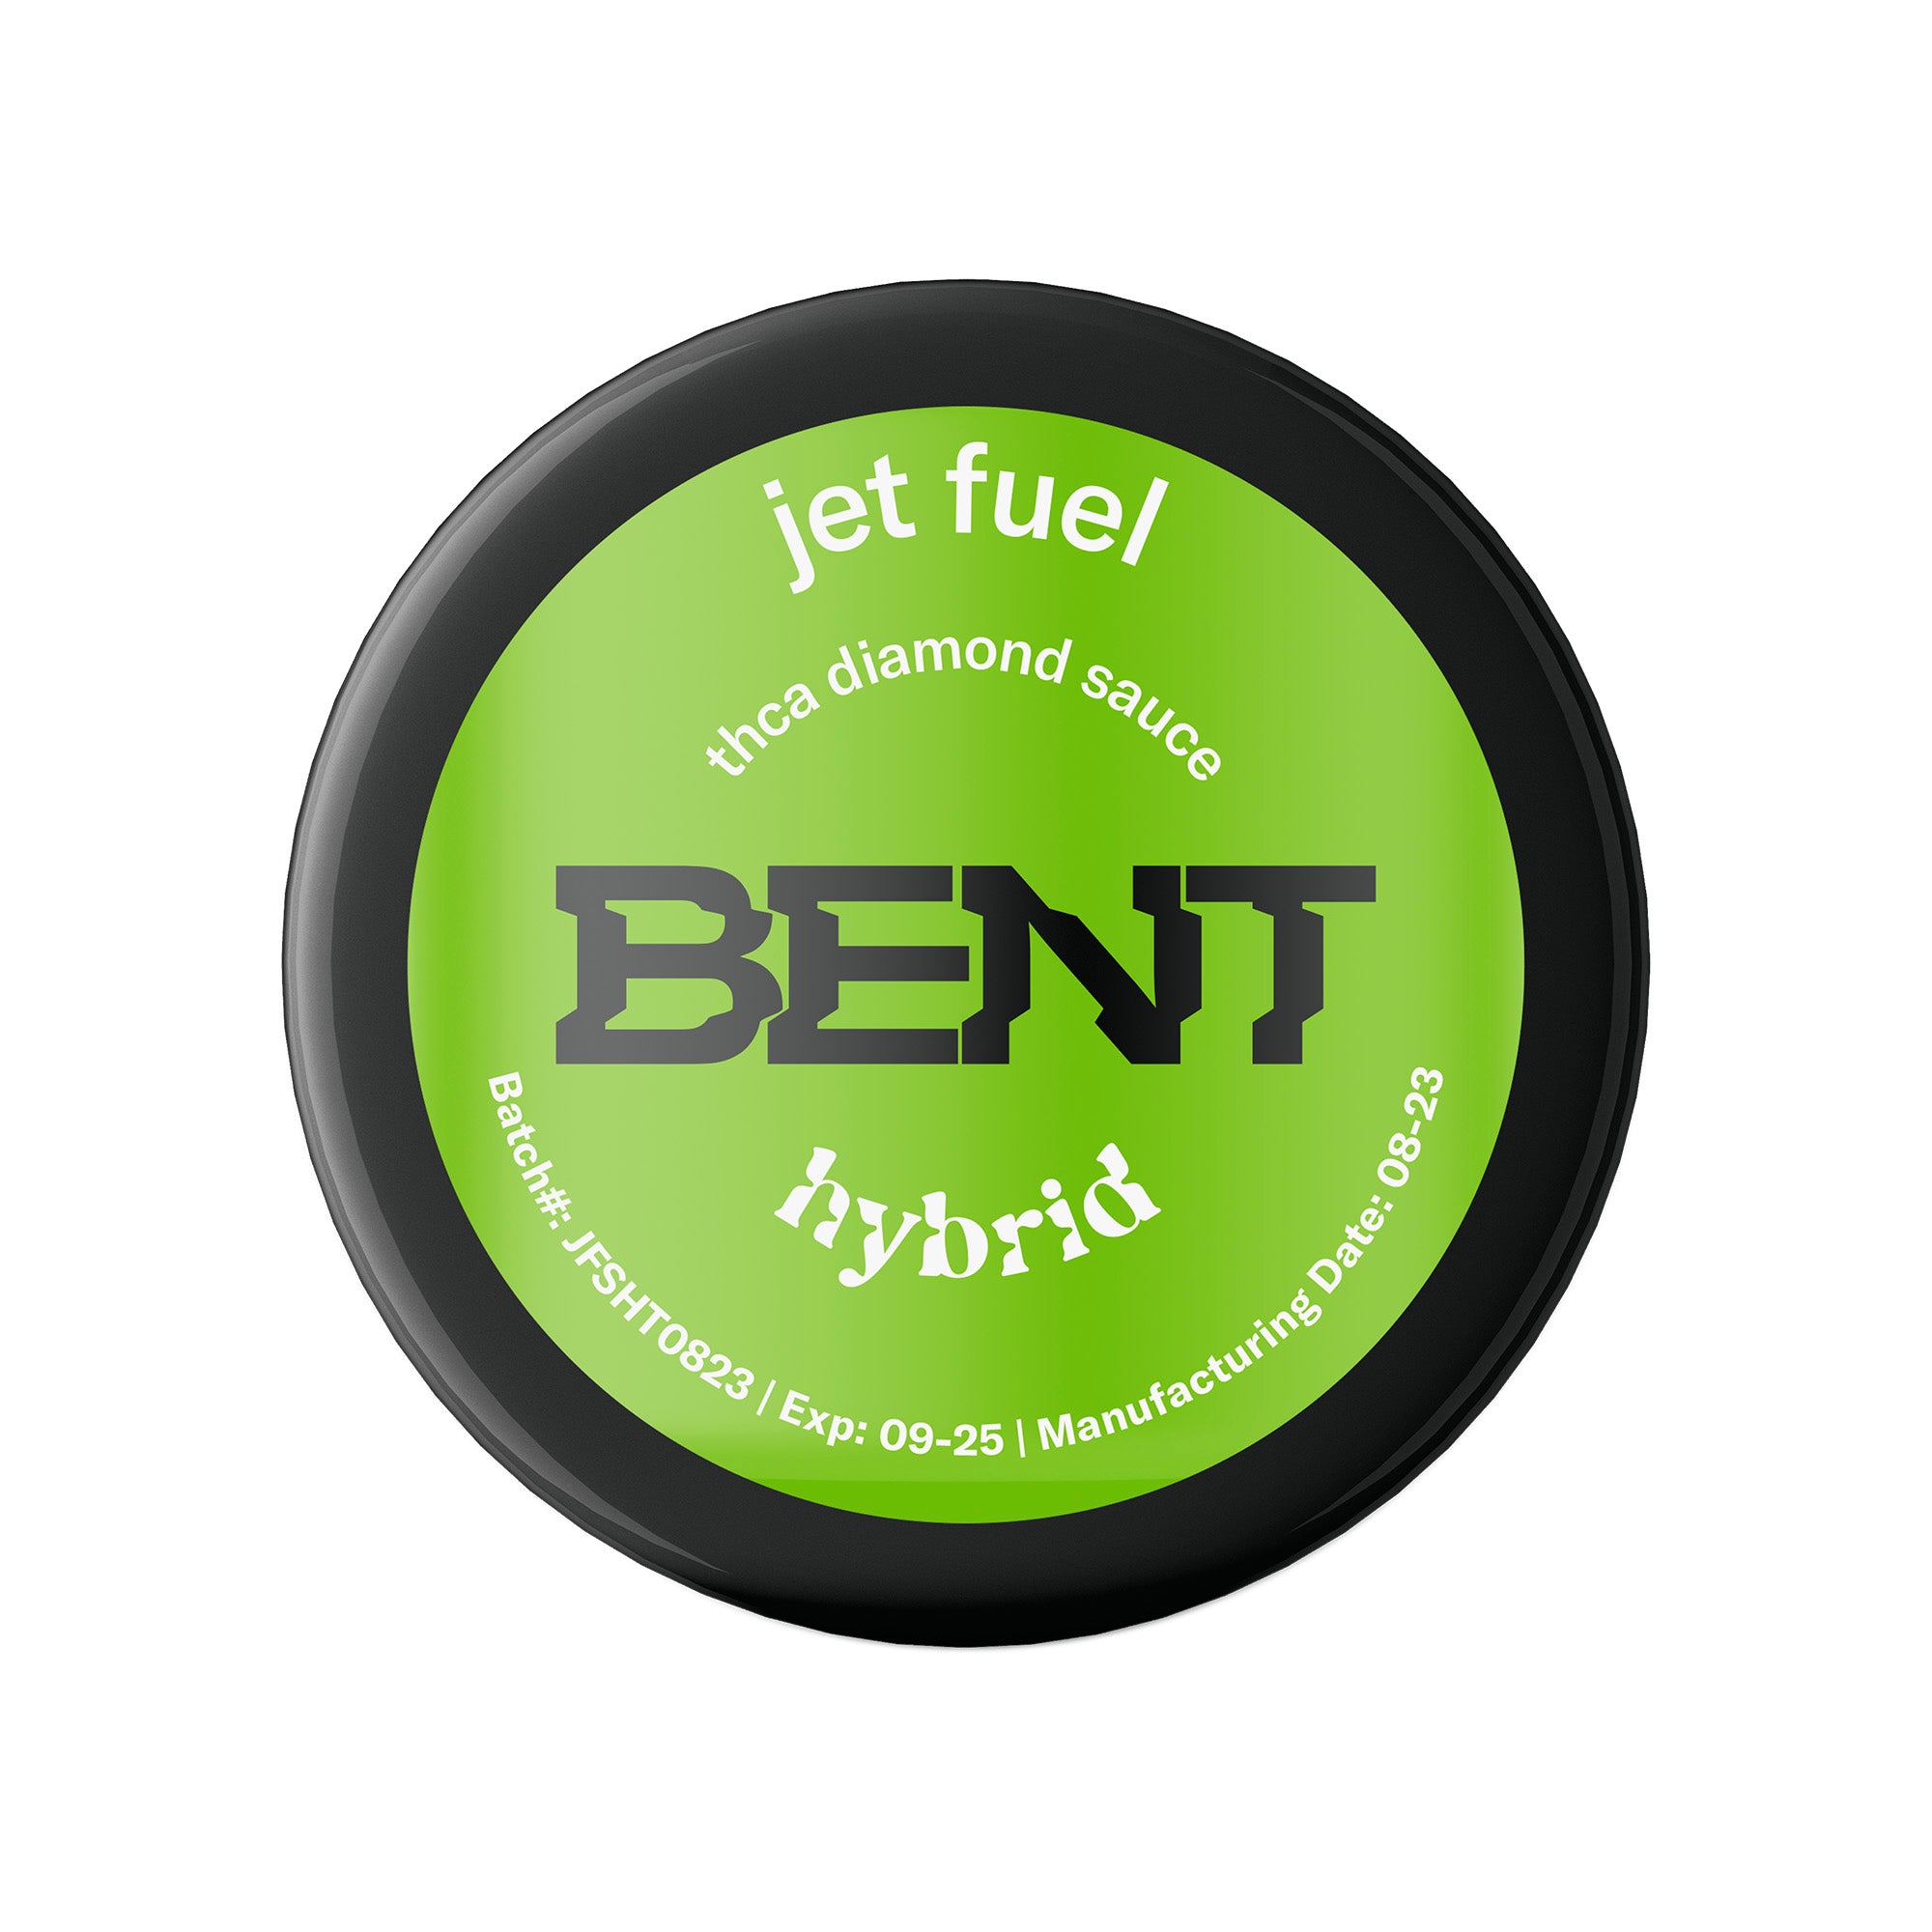 BENT 1G THCa Diamond Sauce Online | Formulated Wellness